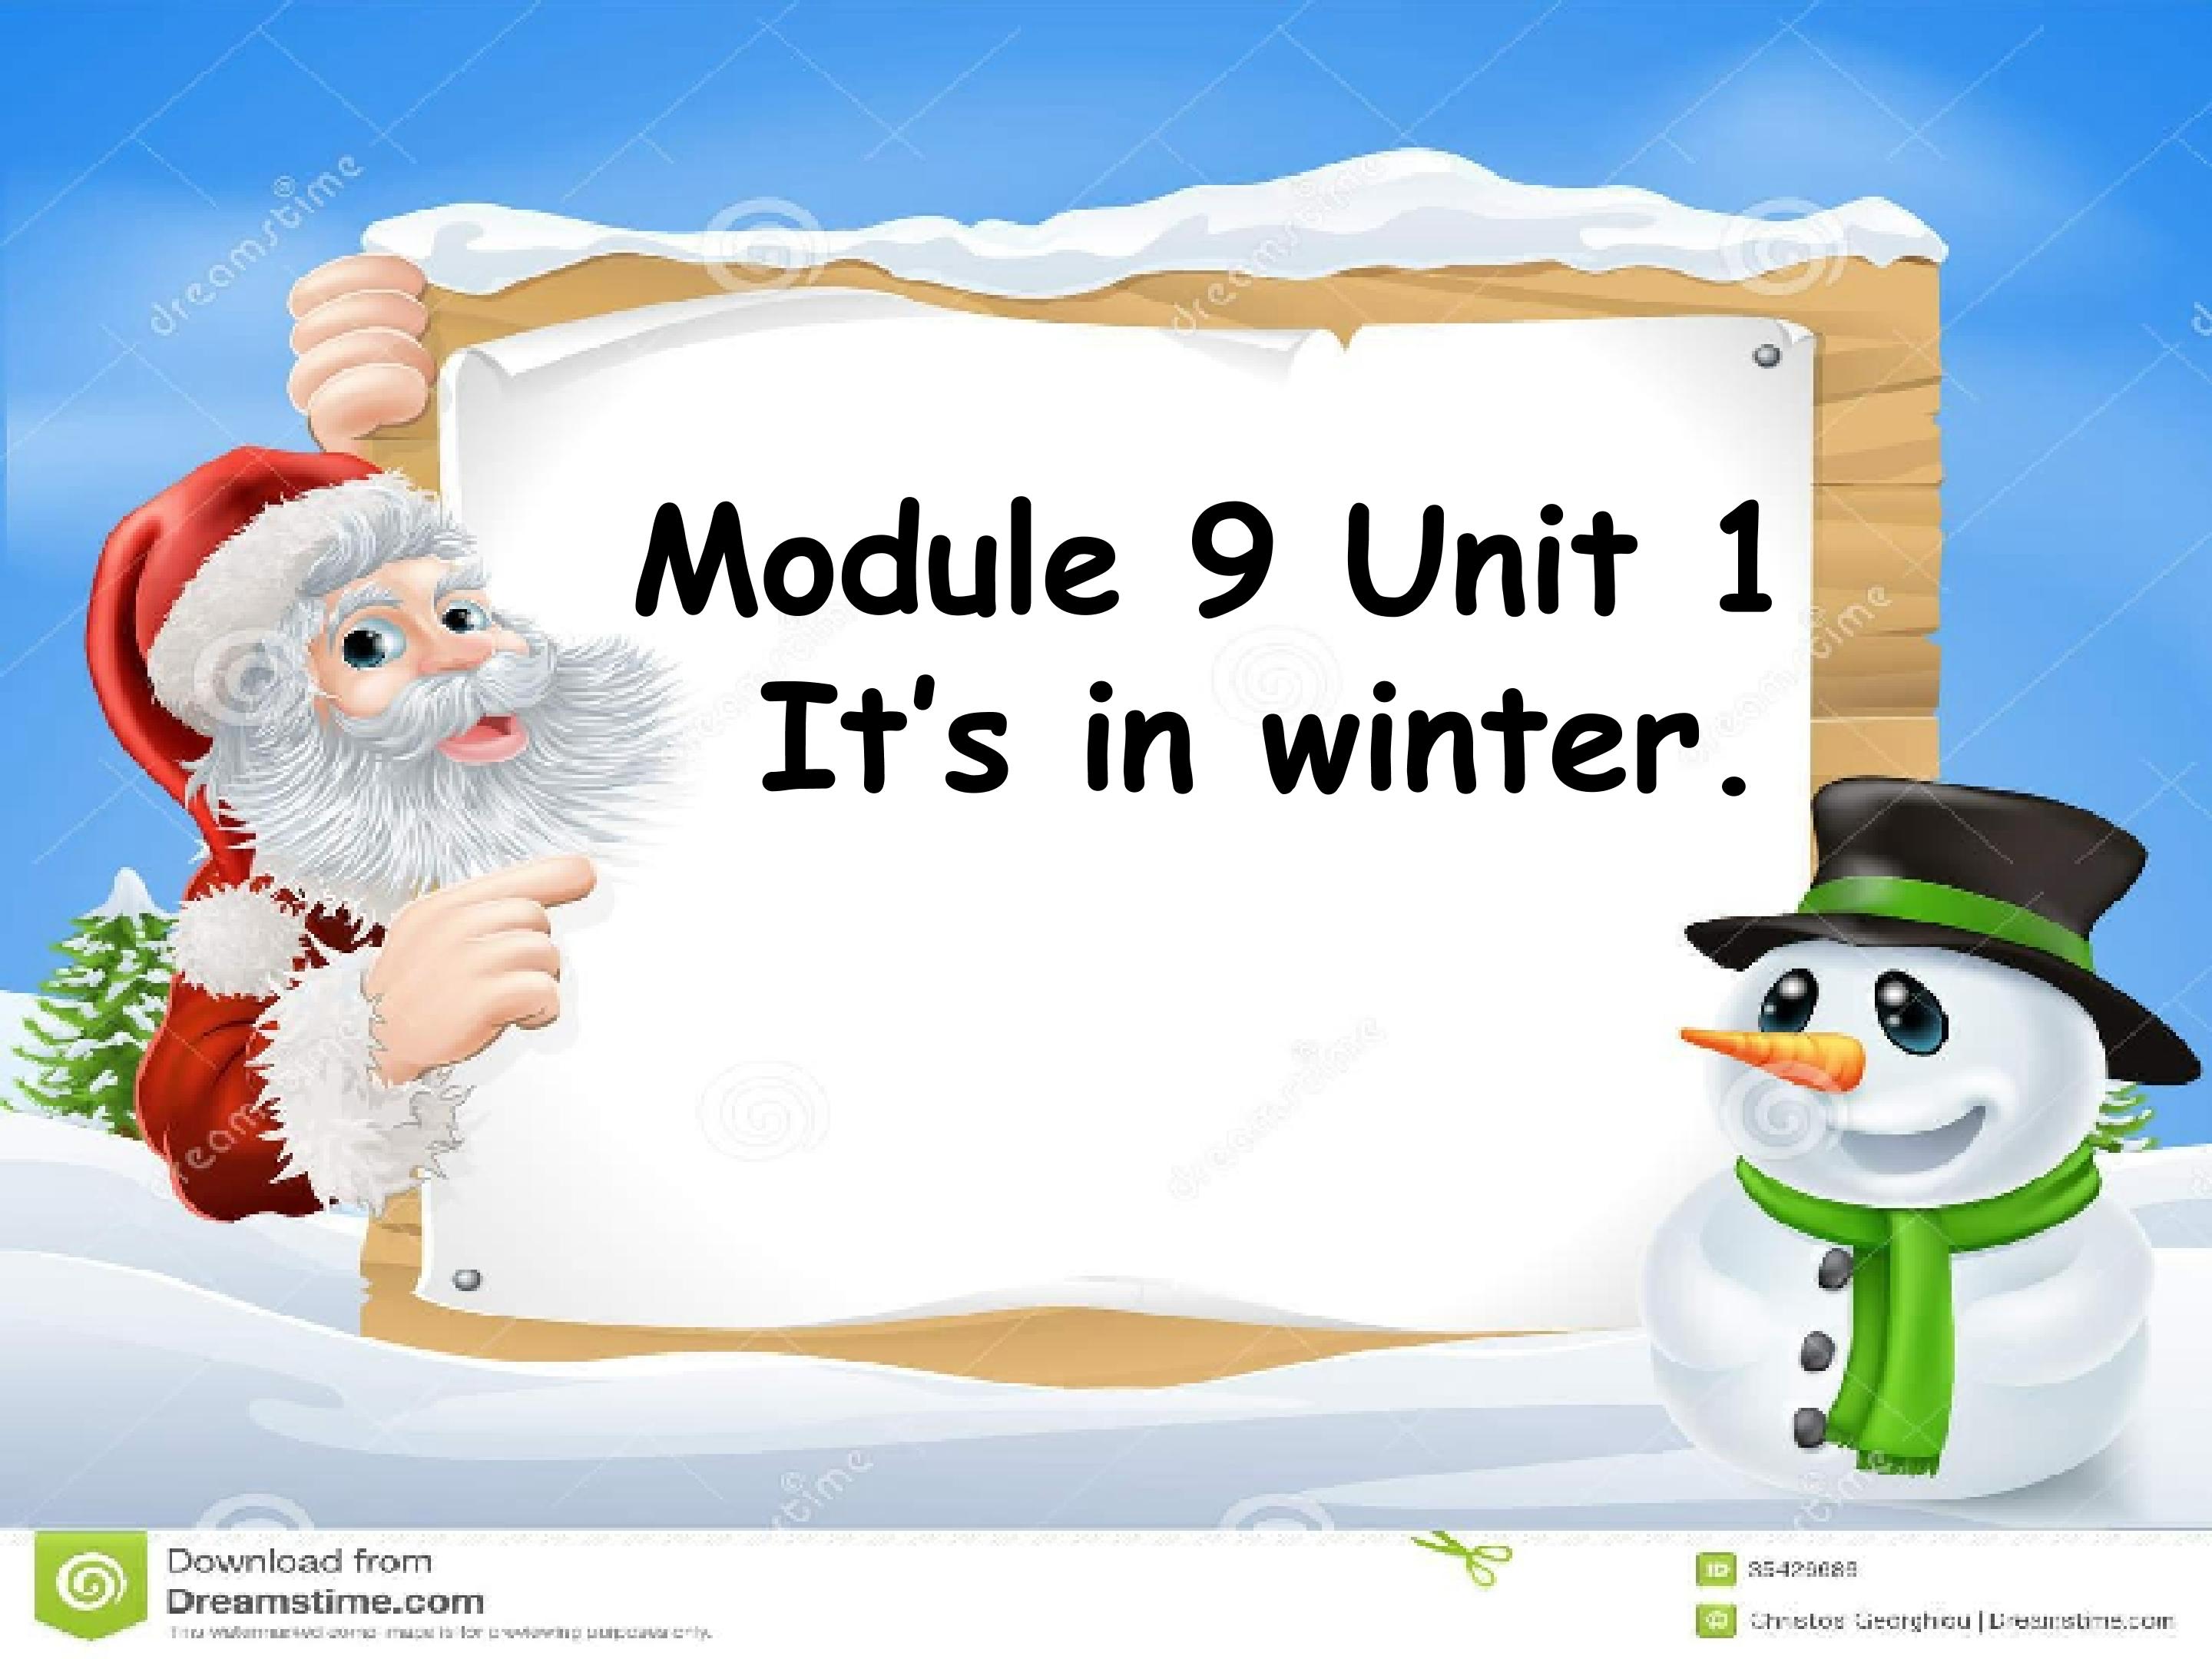 Module 9 Unit 1 It's in winter.